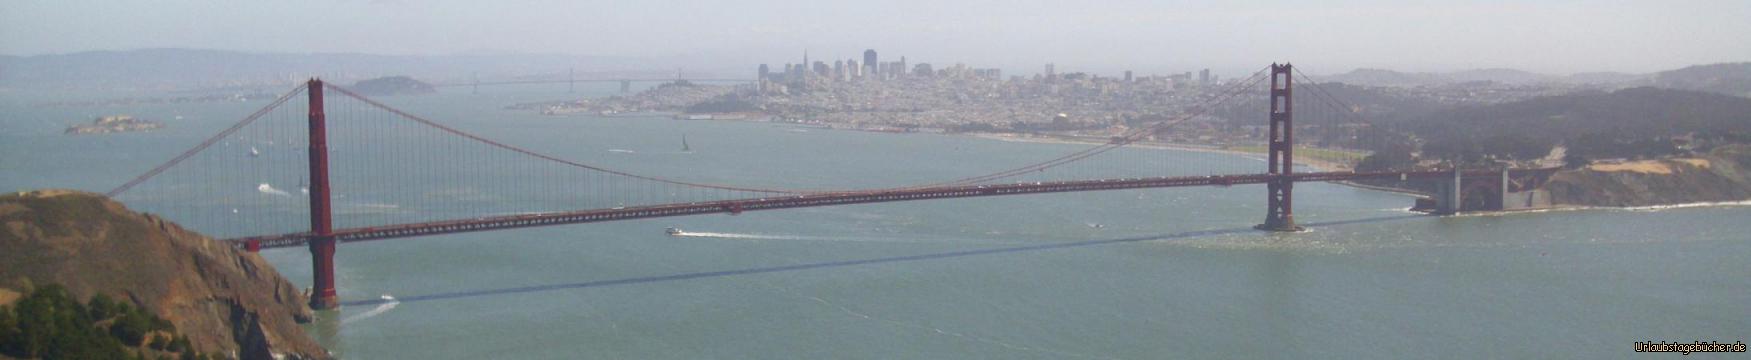 Golden Gate Bridge: die Golden Gate Bridge, von den Marin Headlands aus gesehen, mit der Skyline von San Francisco im Hintergrund,
war bei ihrer Eröffnung 1937, mit einer Hauptstützweite von 1280m die längste Hängebrücke der Welt